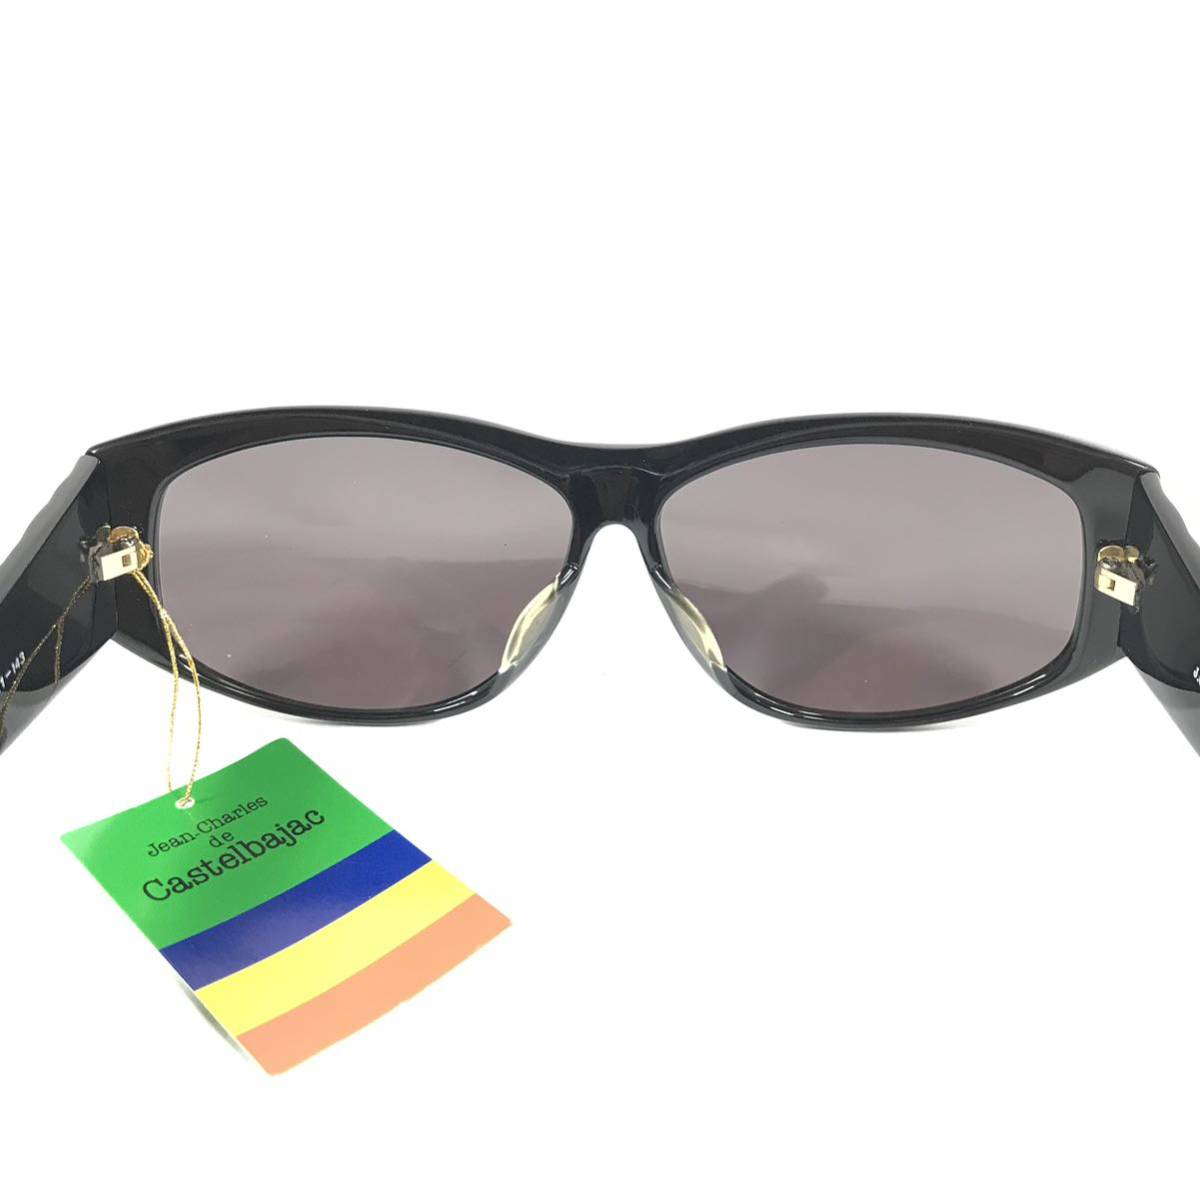  не использовался товар [ Castelbajac ] подлинный товар Castelbajac солнцезащитные очки JC Logo 9003 серый × чёрный мужской женский обычная цена 2.8 десять тысяч иен стоимость доставки 520 иен 88